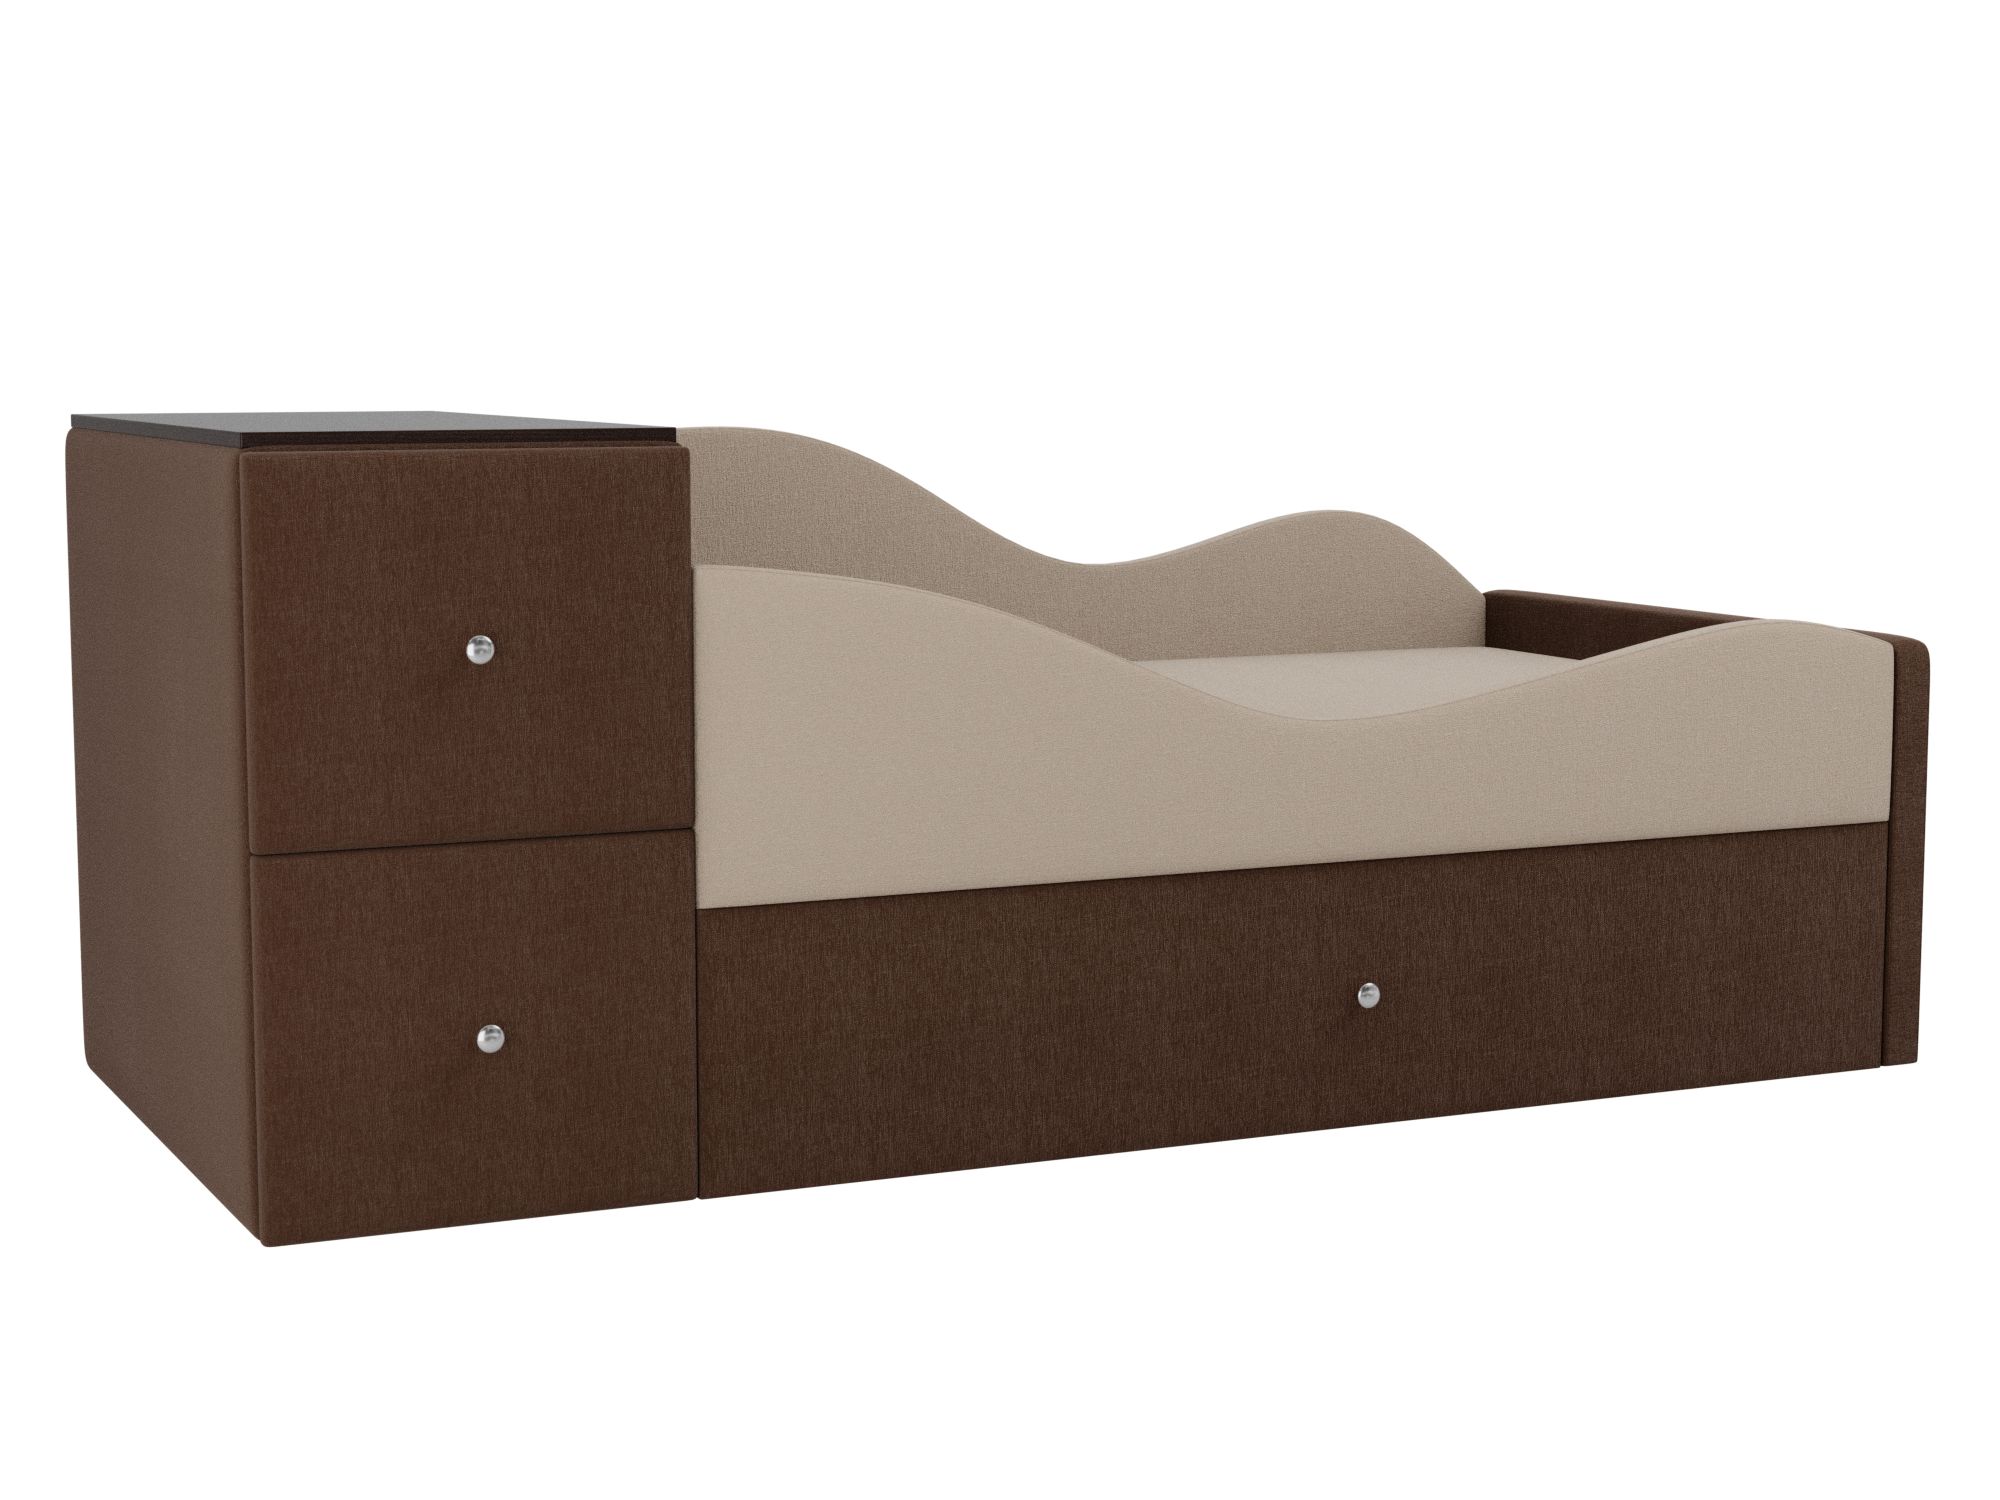 Детская кровать Дельта Правый угол Бежевый, Коричневый, ЛДСП детская кровать мебелико делюкс рогожка коричневый